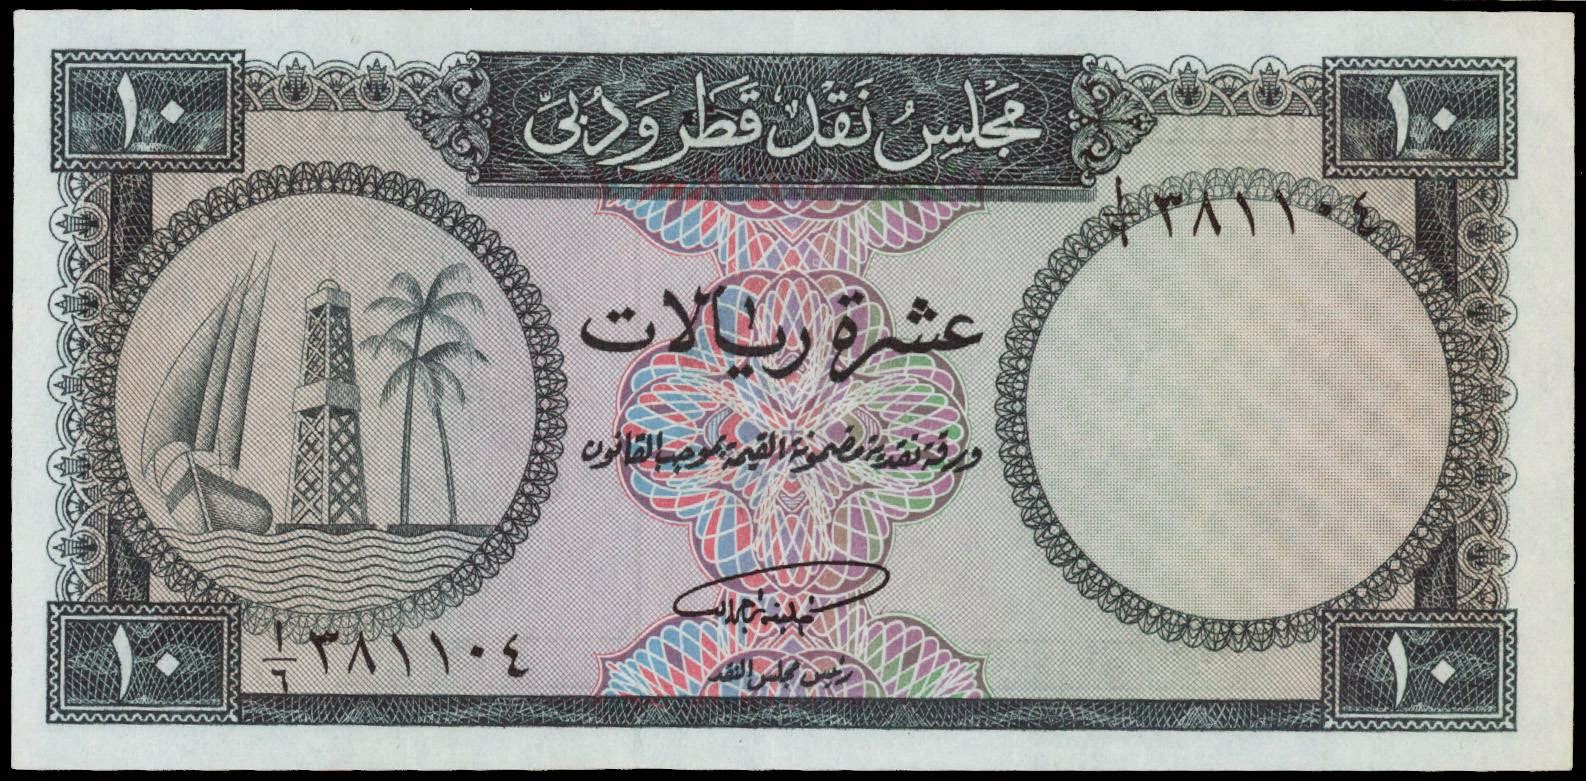 Qatar and Dubai banknotes Currency 10 Riyals note 1960